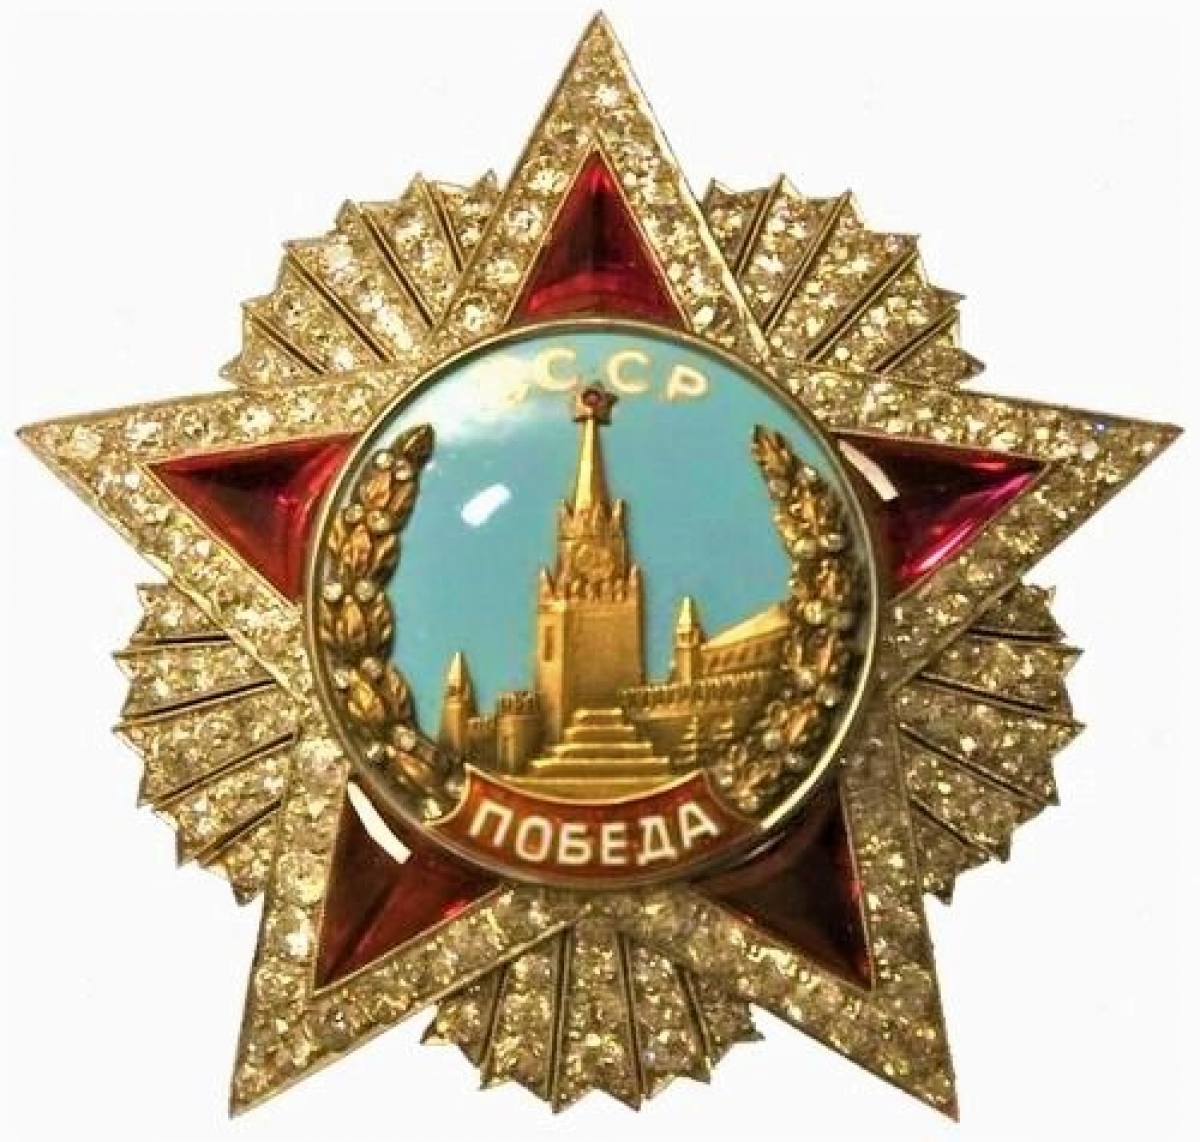 Vị tướng duy nhất được tặng thưởng huân chương đắt giá nhất Liên Xô là ai? - Ảnh 2.